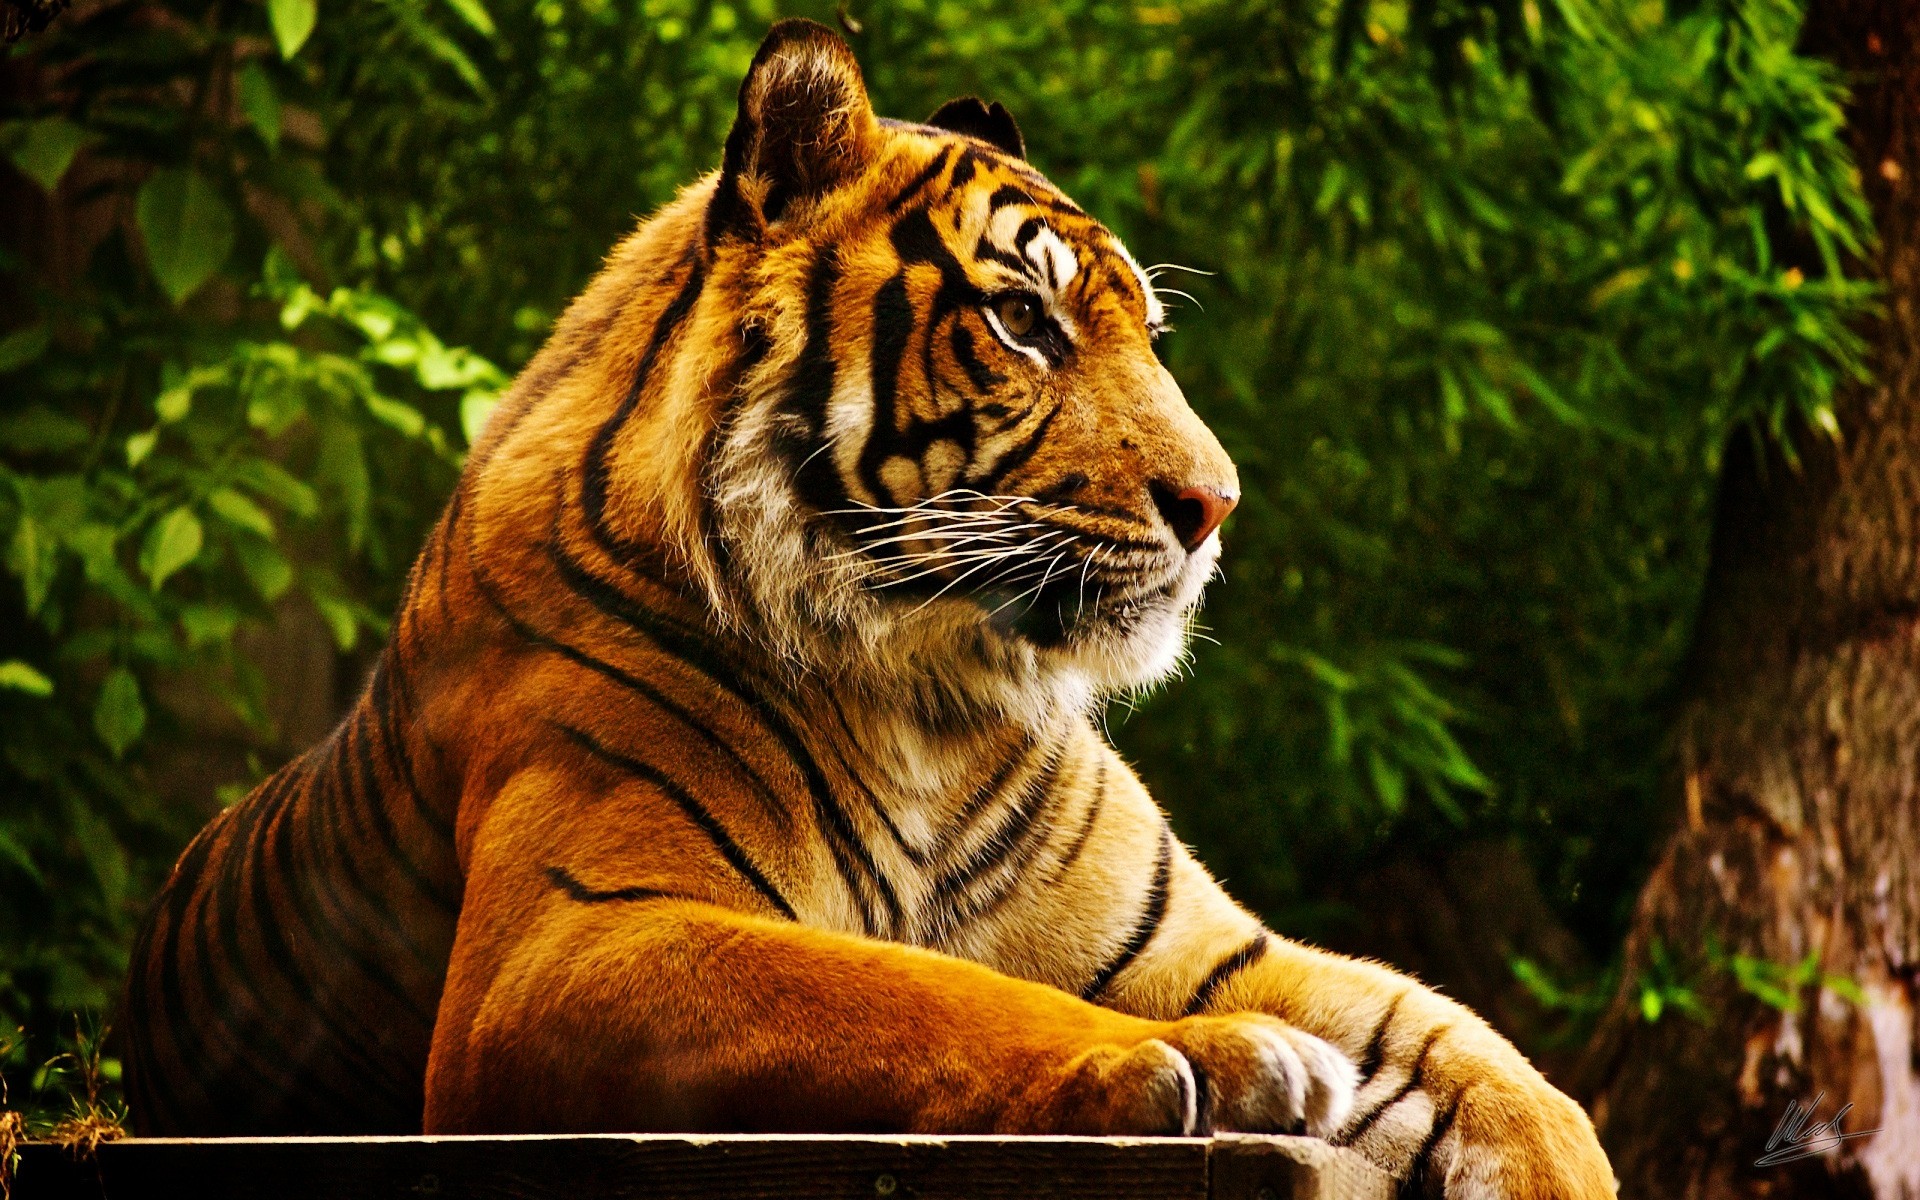 животные тигр кошка джунгли дикой природы хищник охотник большой млекопитающее опасность природа животное дикий сафари зоопарк мясоед мех злой портрет охота глядя